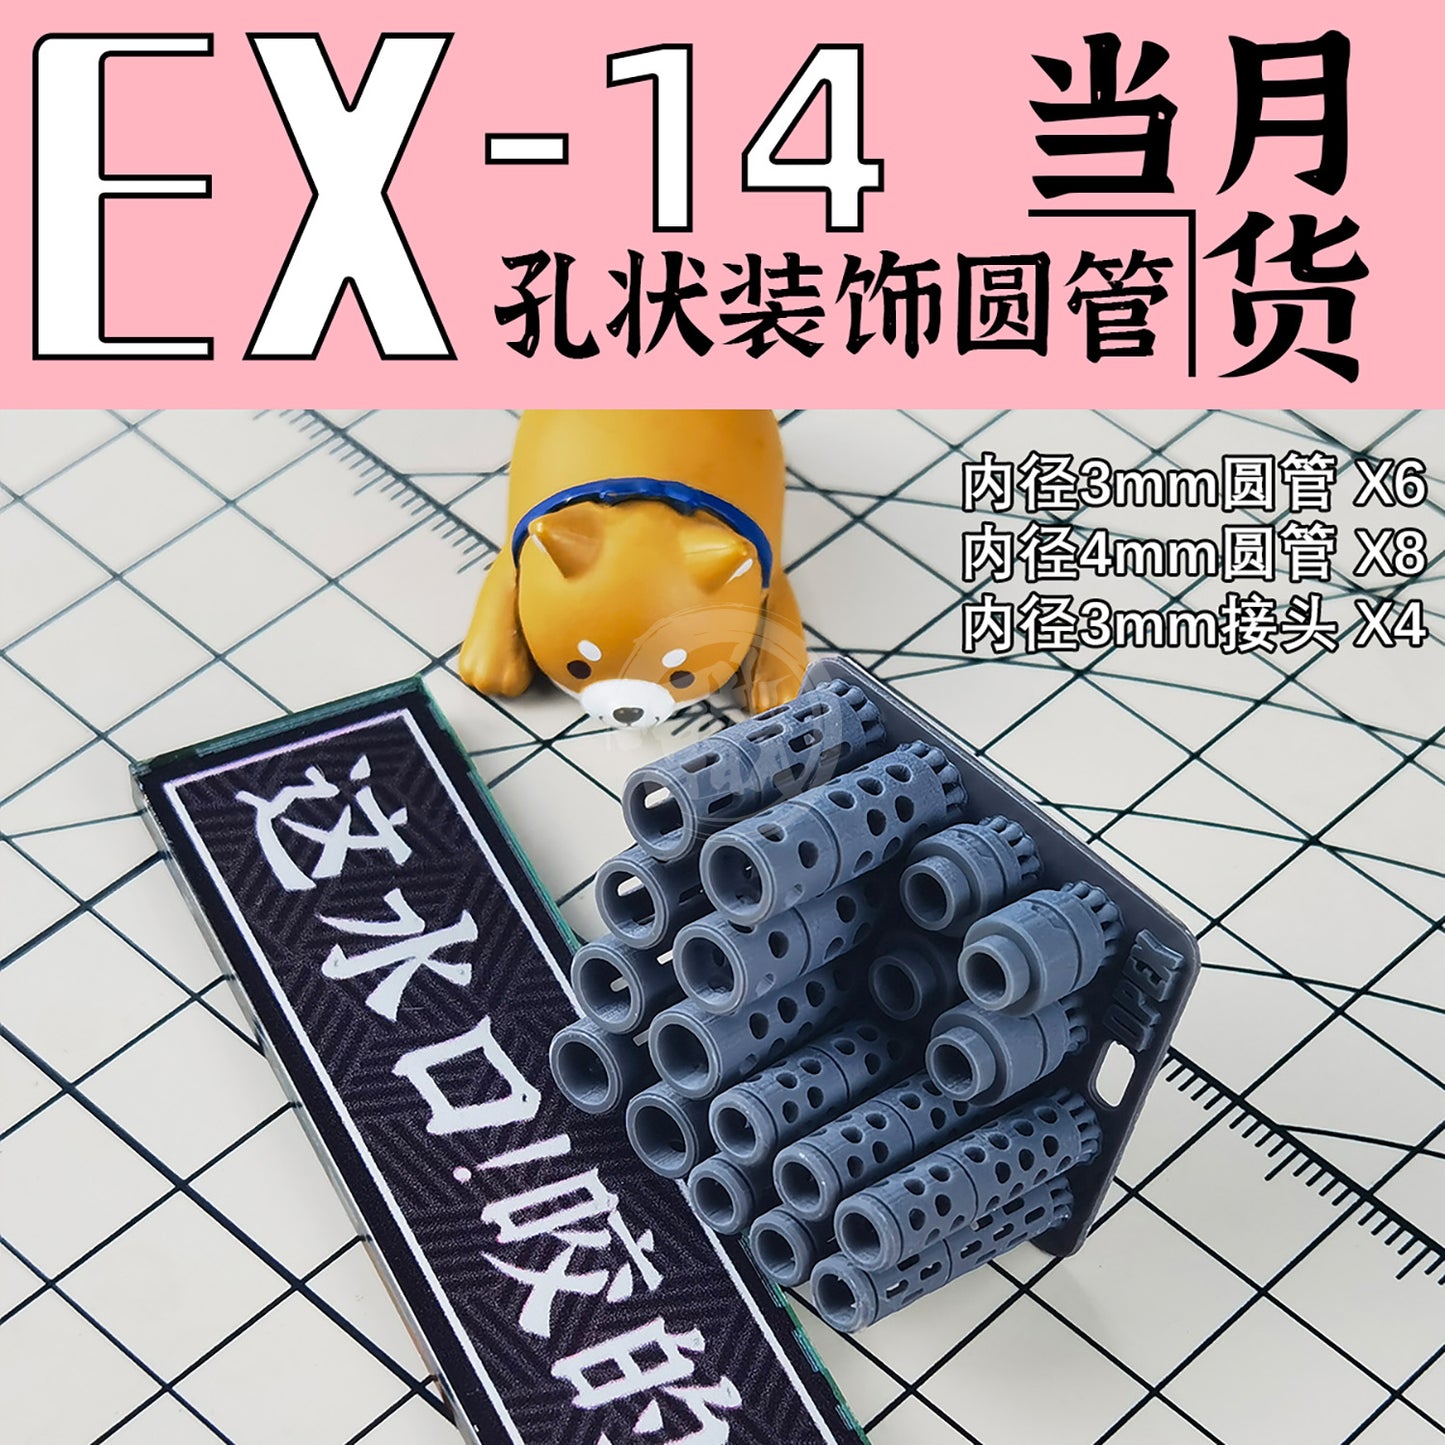 GZ-EX-14 [Gun Muzzle] - ShokuninGunpla